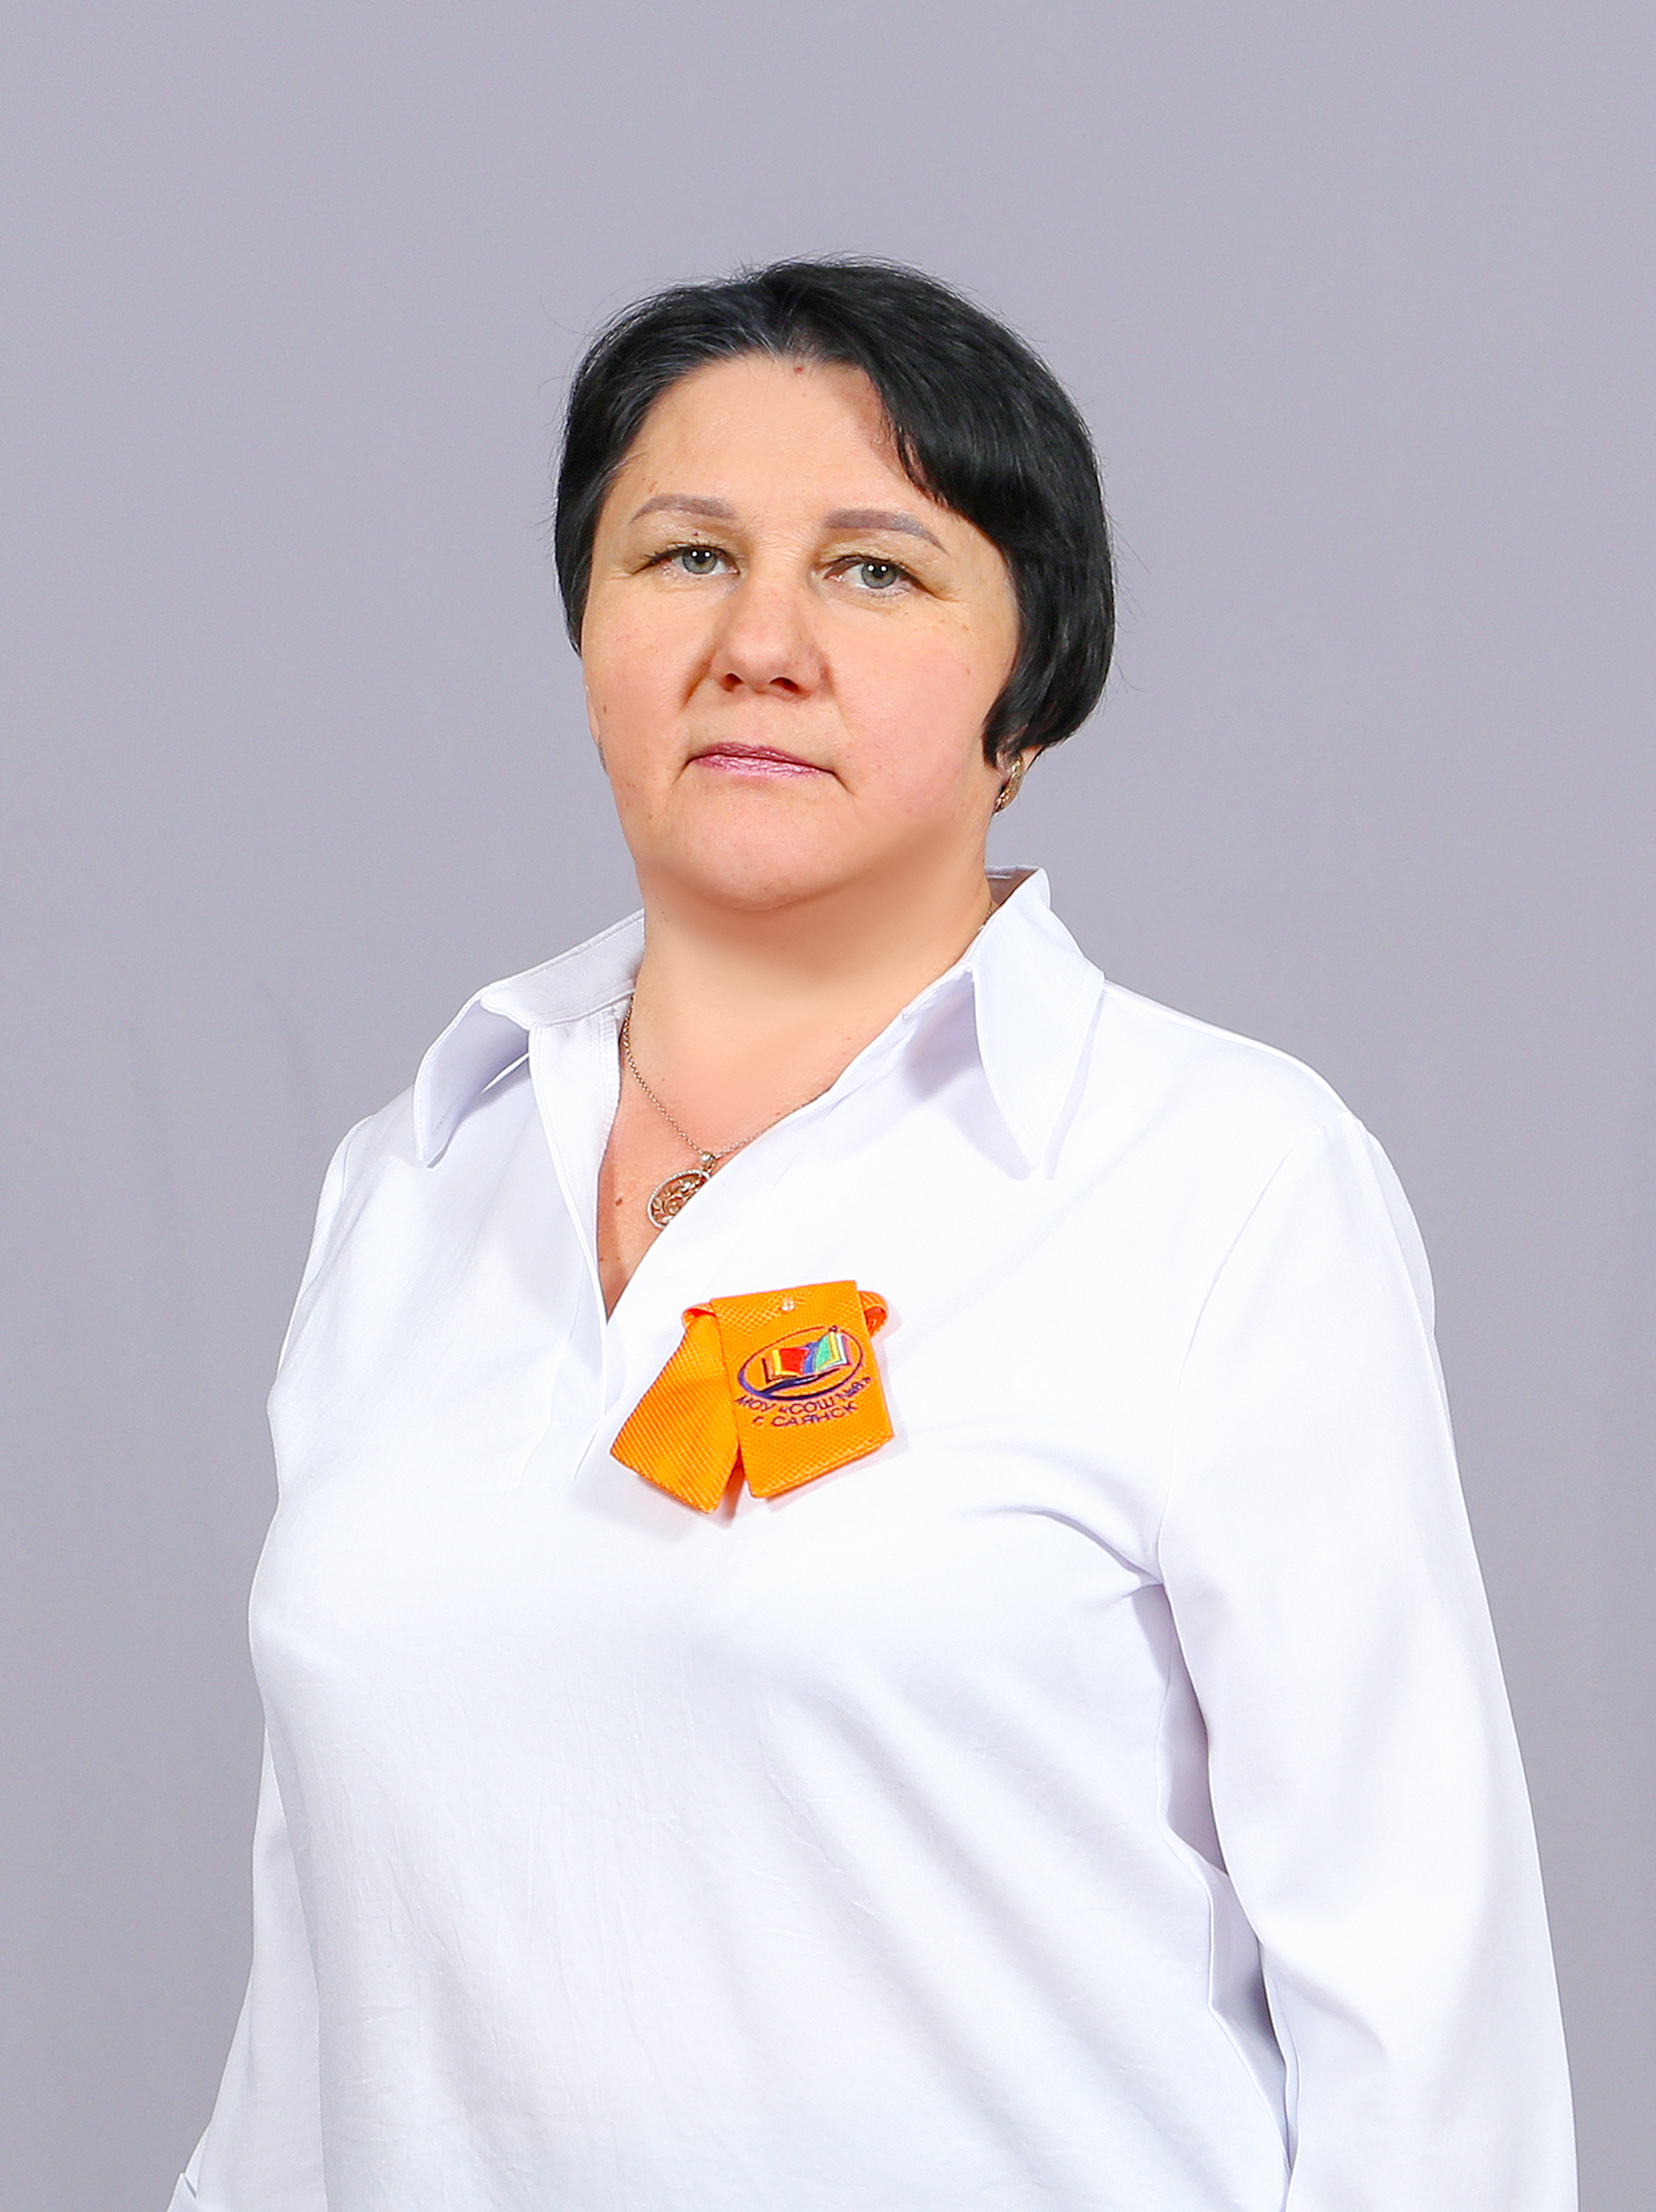 Таюрская Людмила Николаевна.